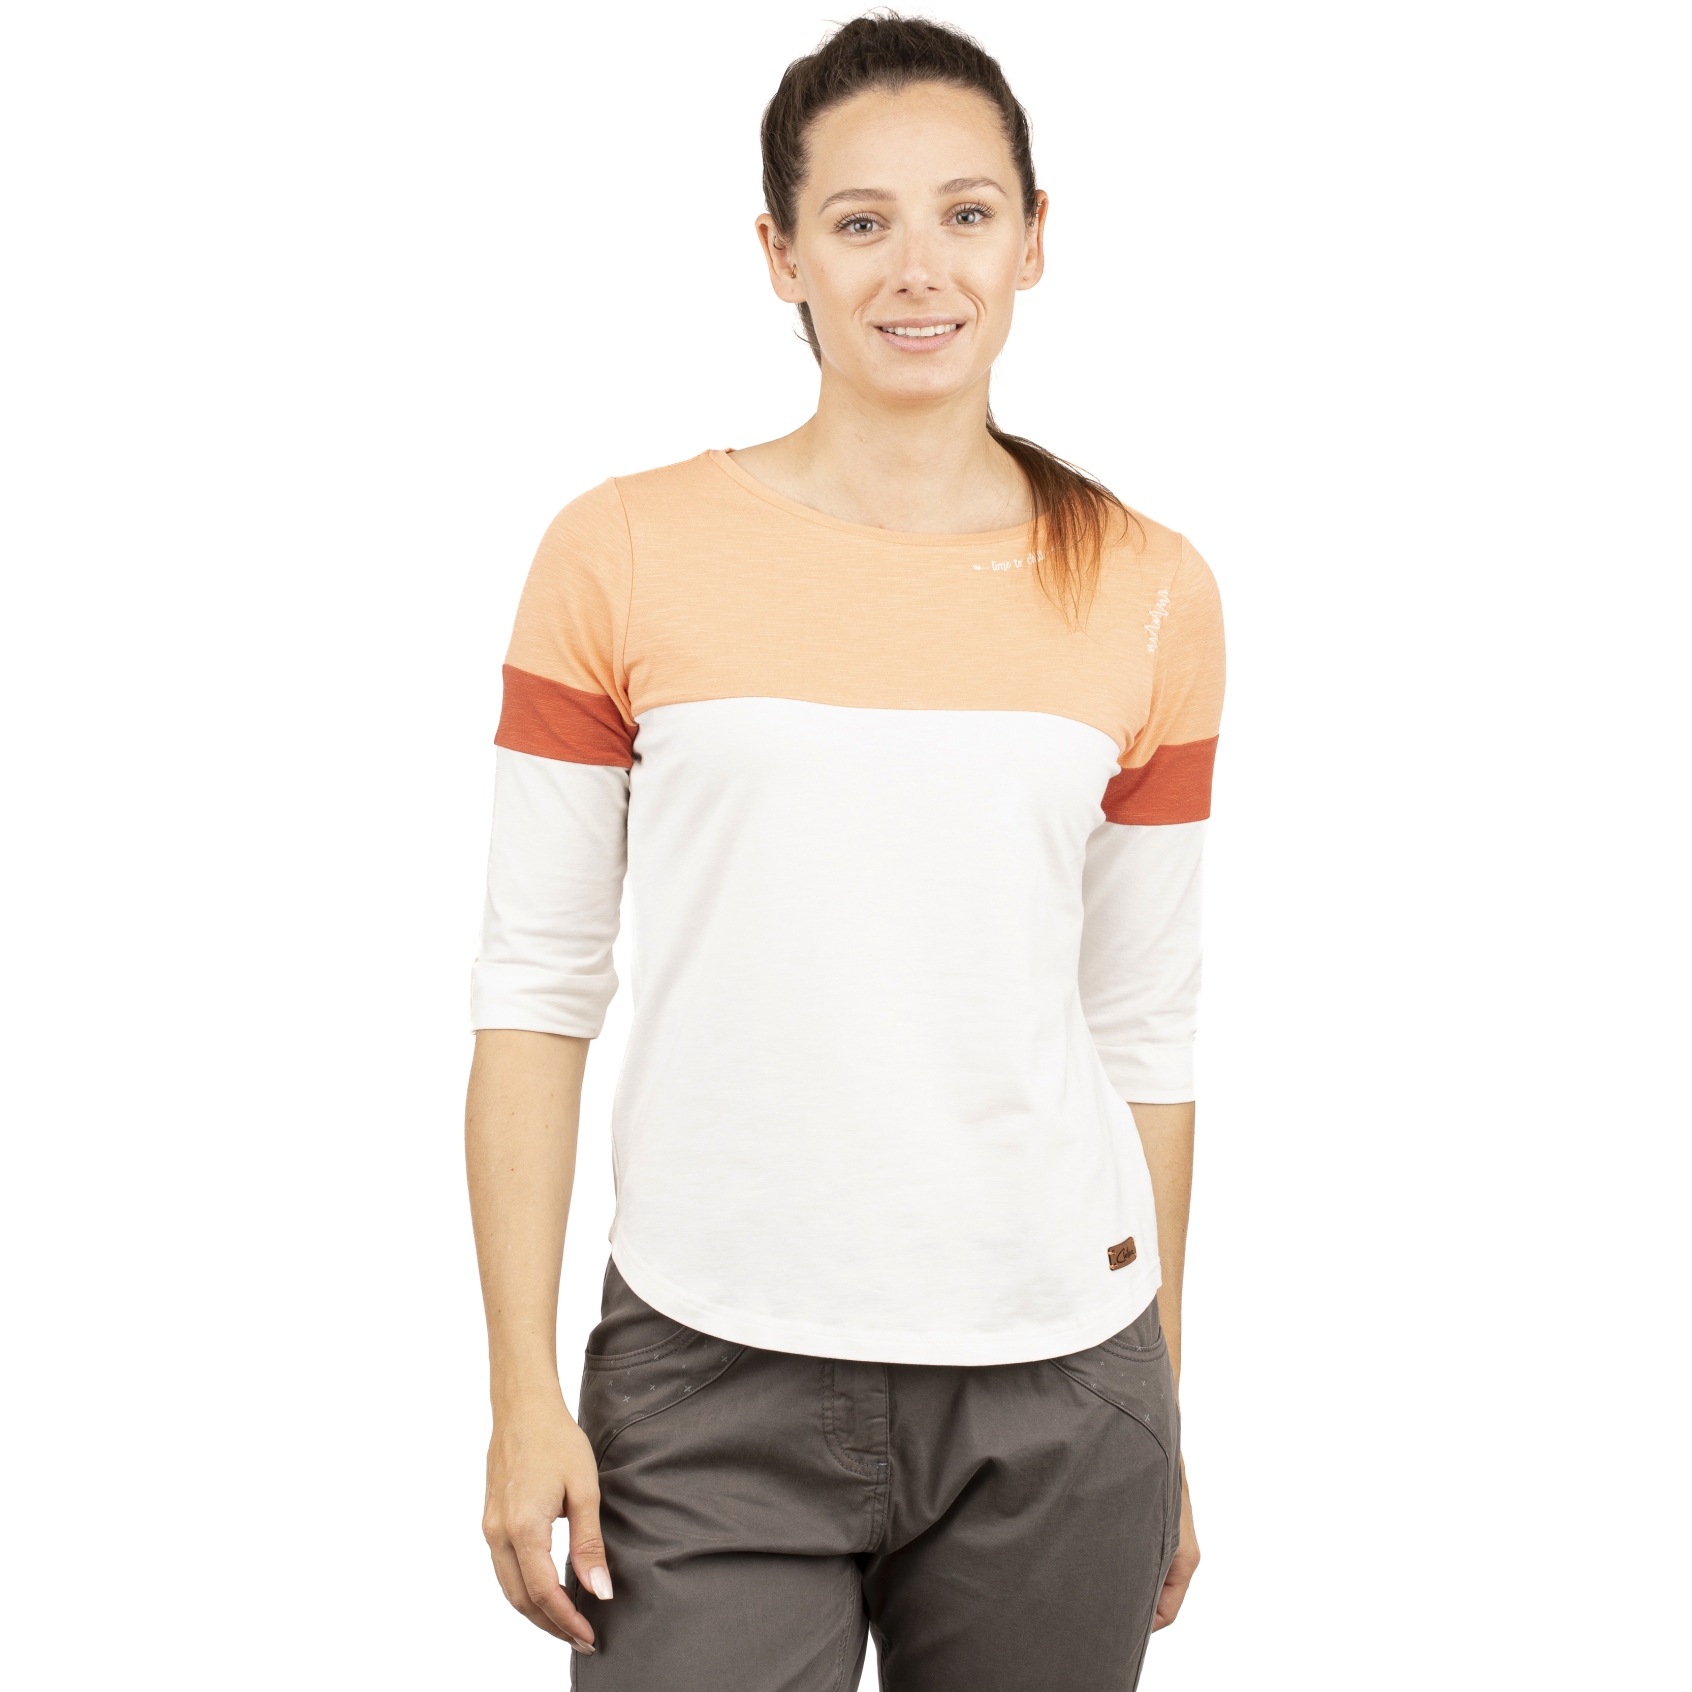 Produktbild von Chillaz Balanced 3/4-Arm Shirt Damen - coral/white